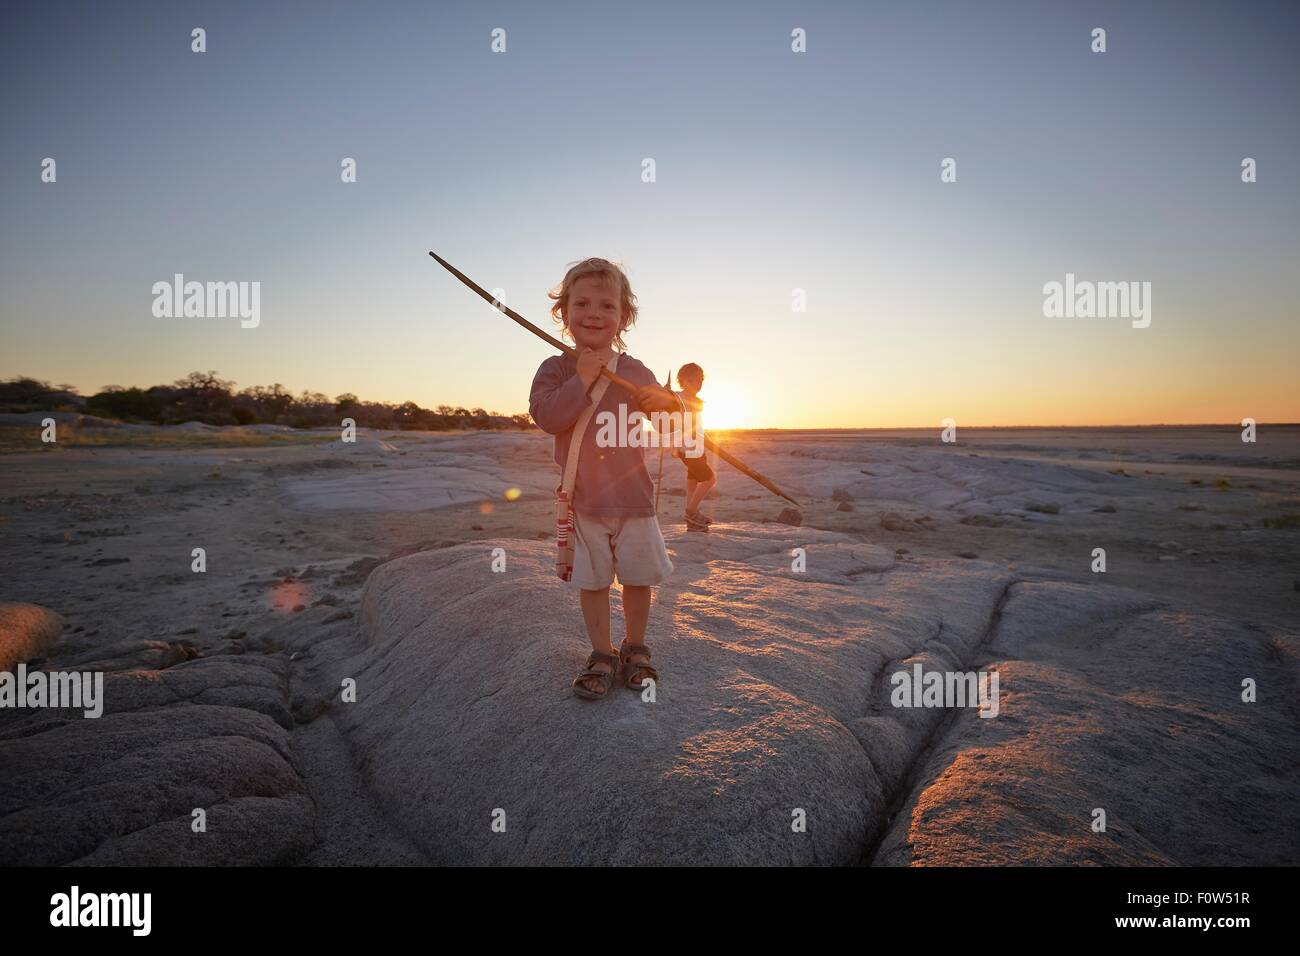 Ritratto di giovane ragazzo in piedi sulla roccia, holding spear, tramonto, Gweta, makgadikgadi, Botswana Foto Stock